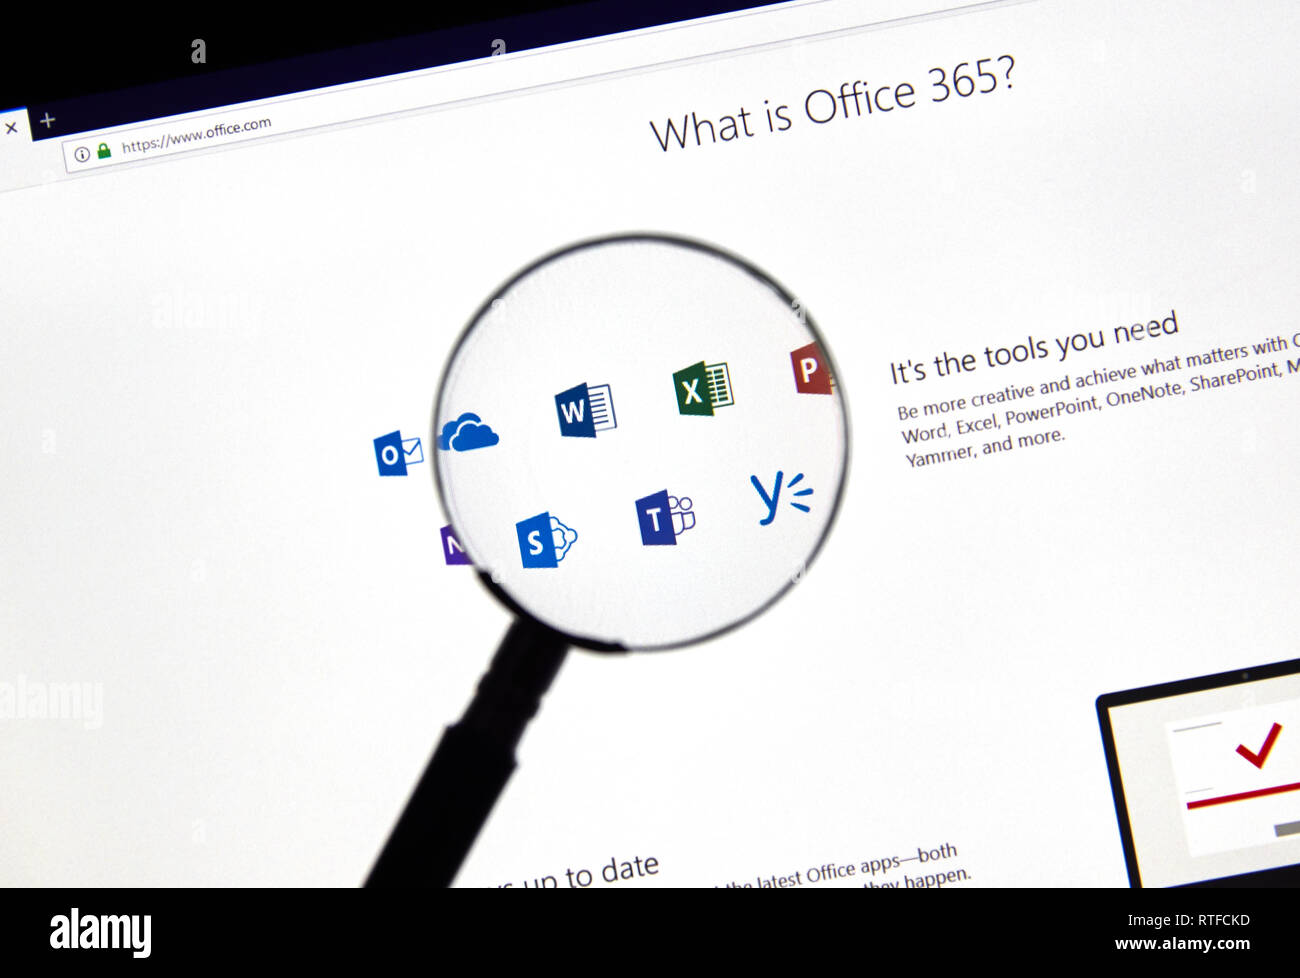 MONTREAL, KANADA - 28. FEBRUAR 2019: Microsoft Office 365 Symbole auf einem PC-Bildschirm. Office 365 ist der Markenname Microsoft verwendet für eine Gruppe von subscripti Stockfoto